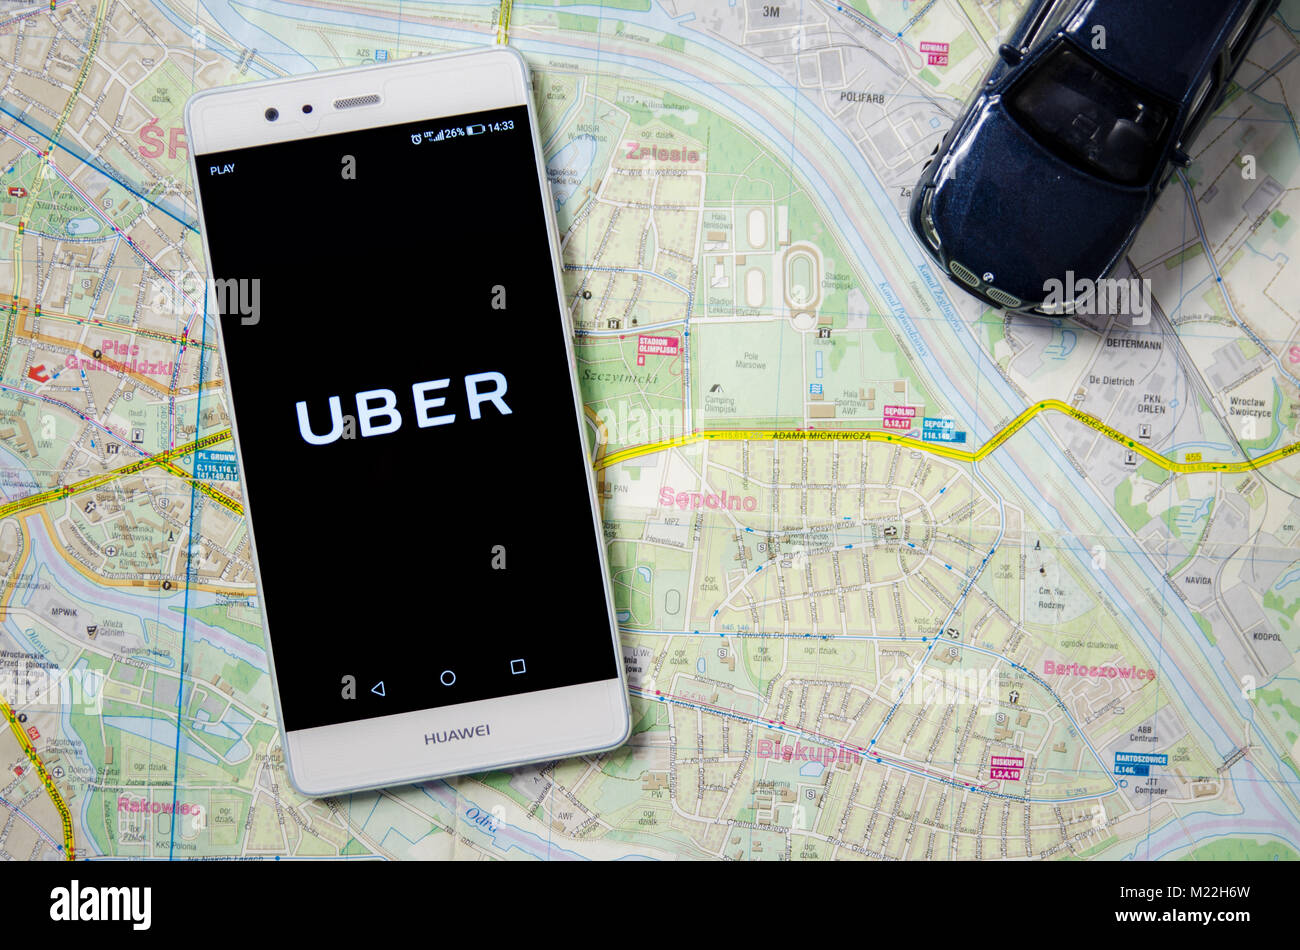 WROCLAW, POLONIA - DEC 13,2017 : Uber logotipo en Huawei P9. Uber es compartir-economía servicio de transporte ubran. Foto de stock